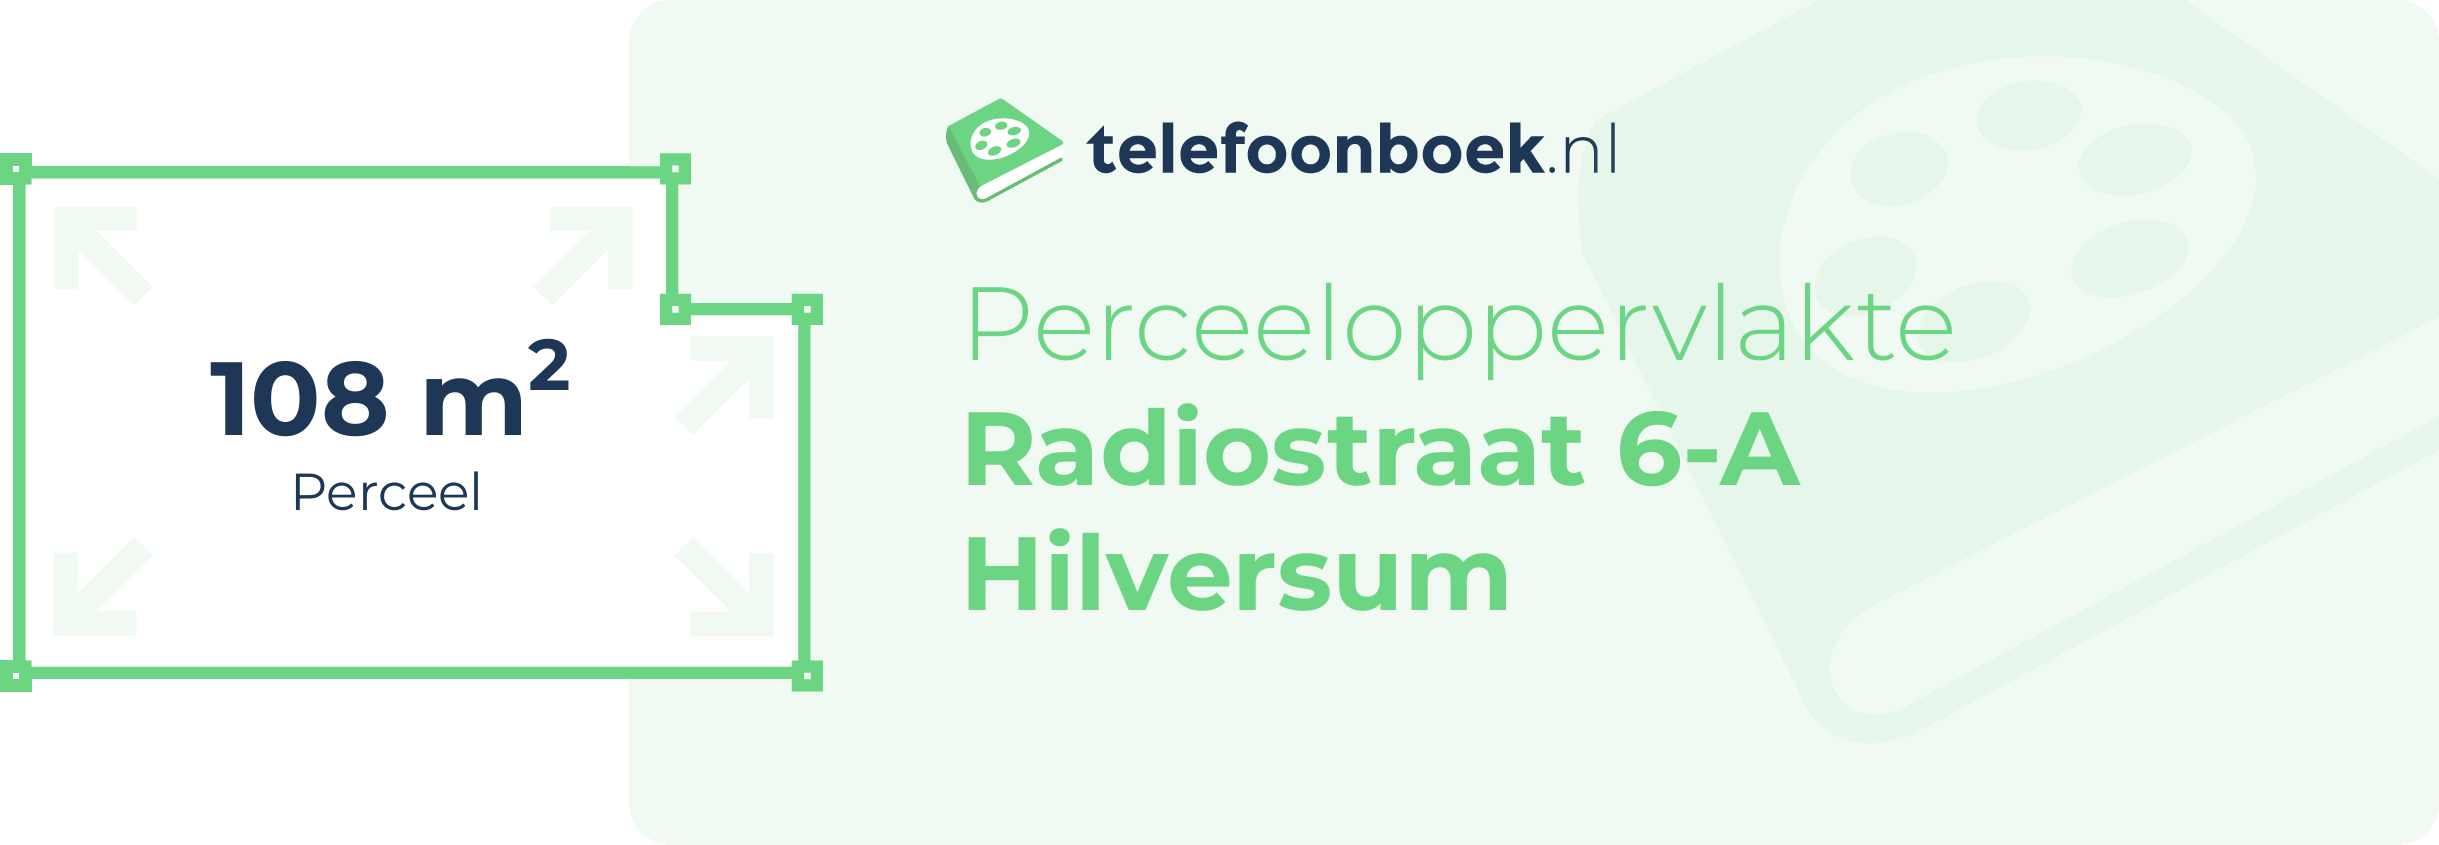 Perceeloppervlakte Radiostraat 6-A Hilversum